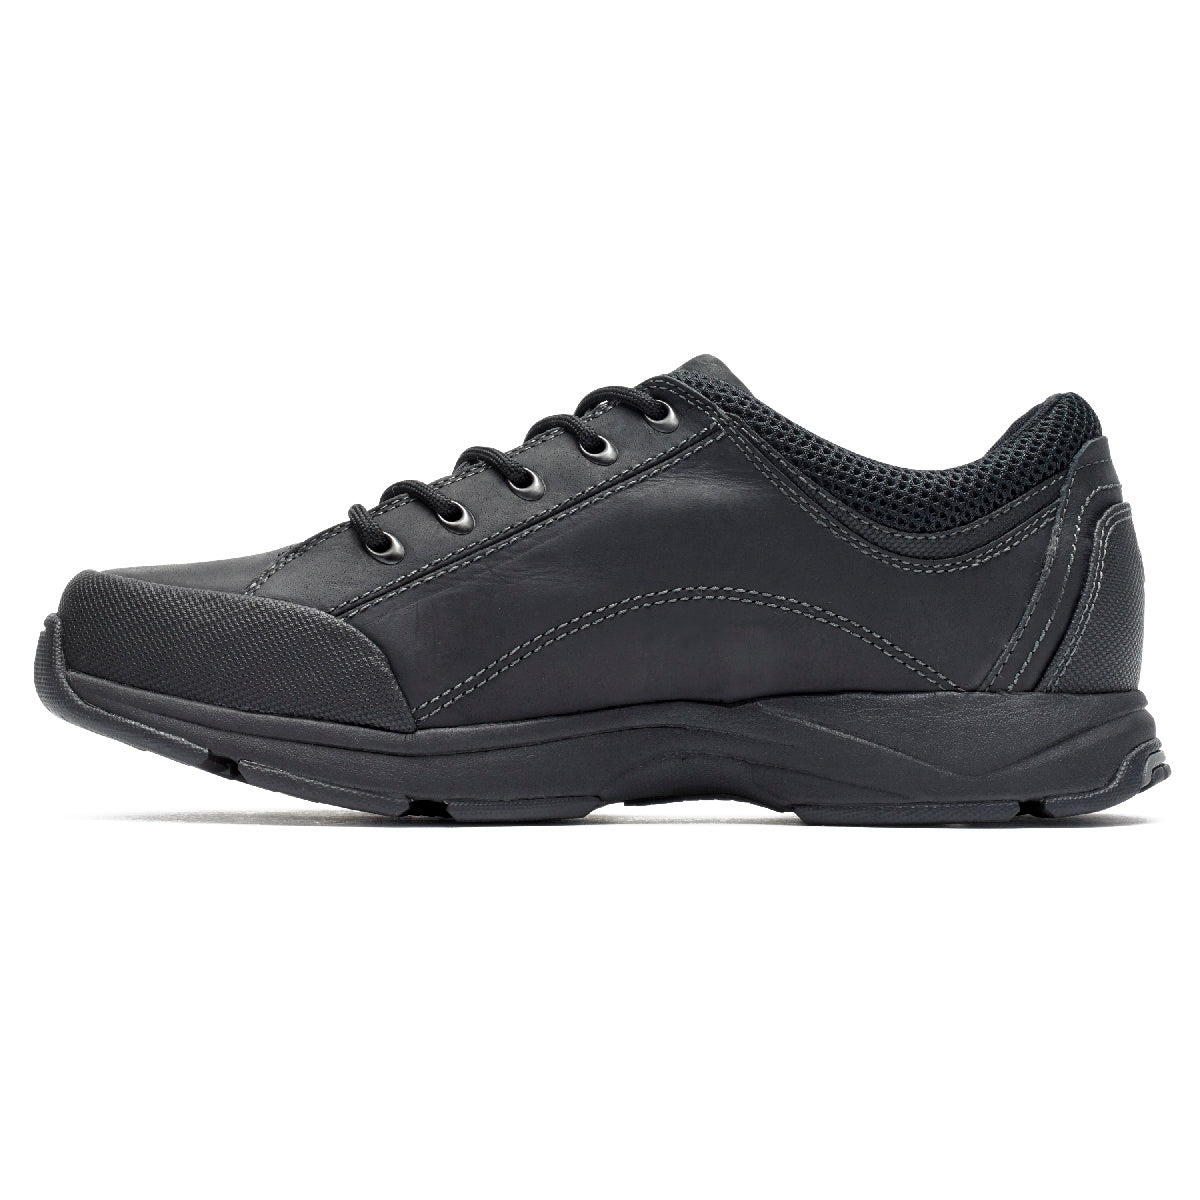 Men's Chranson Lace-Up Walking Shoes | Rockport